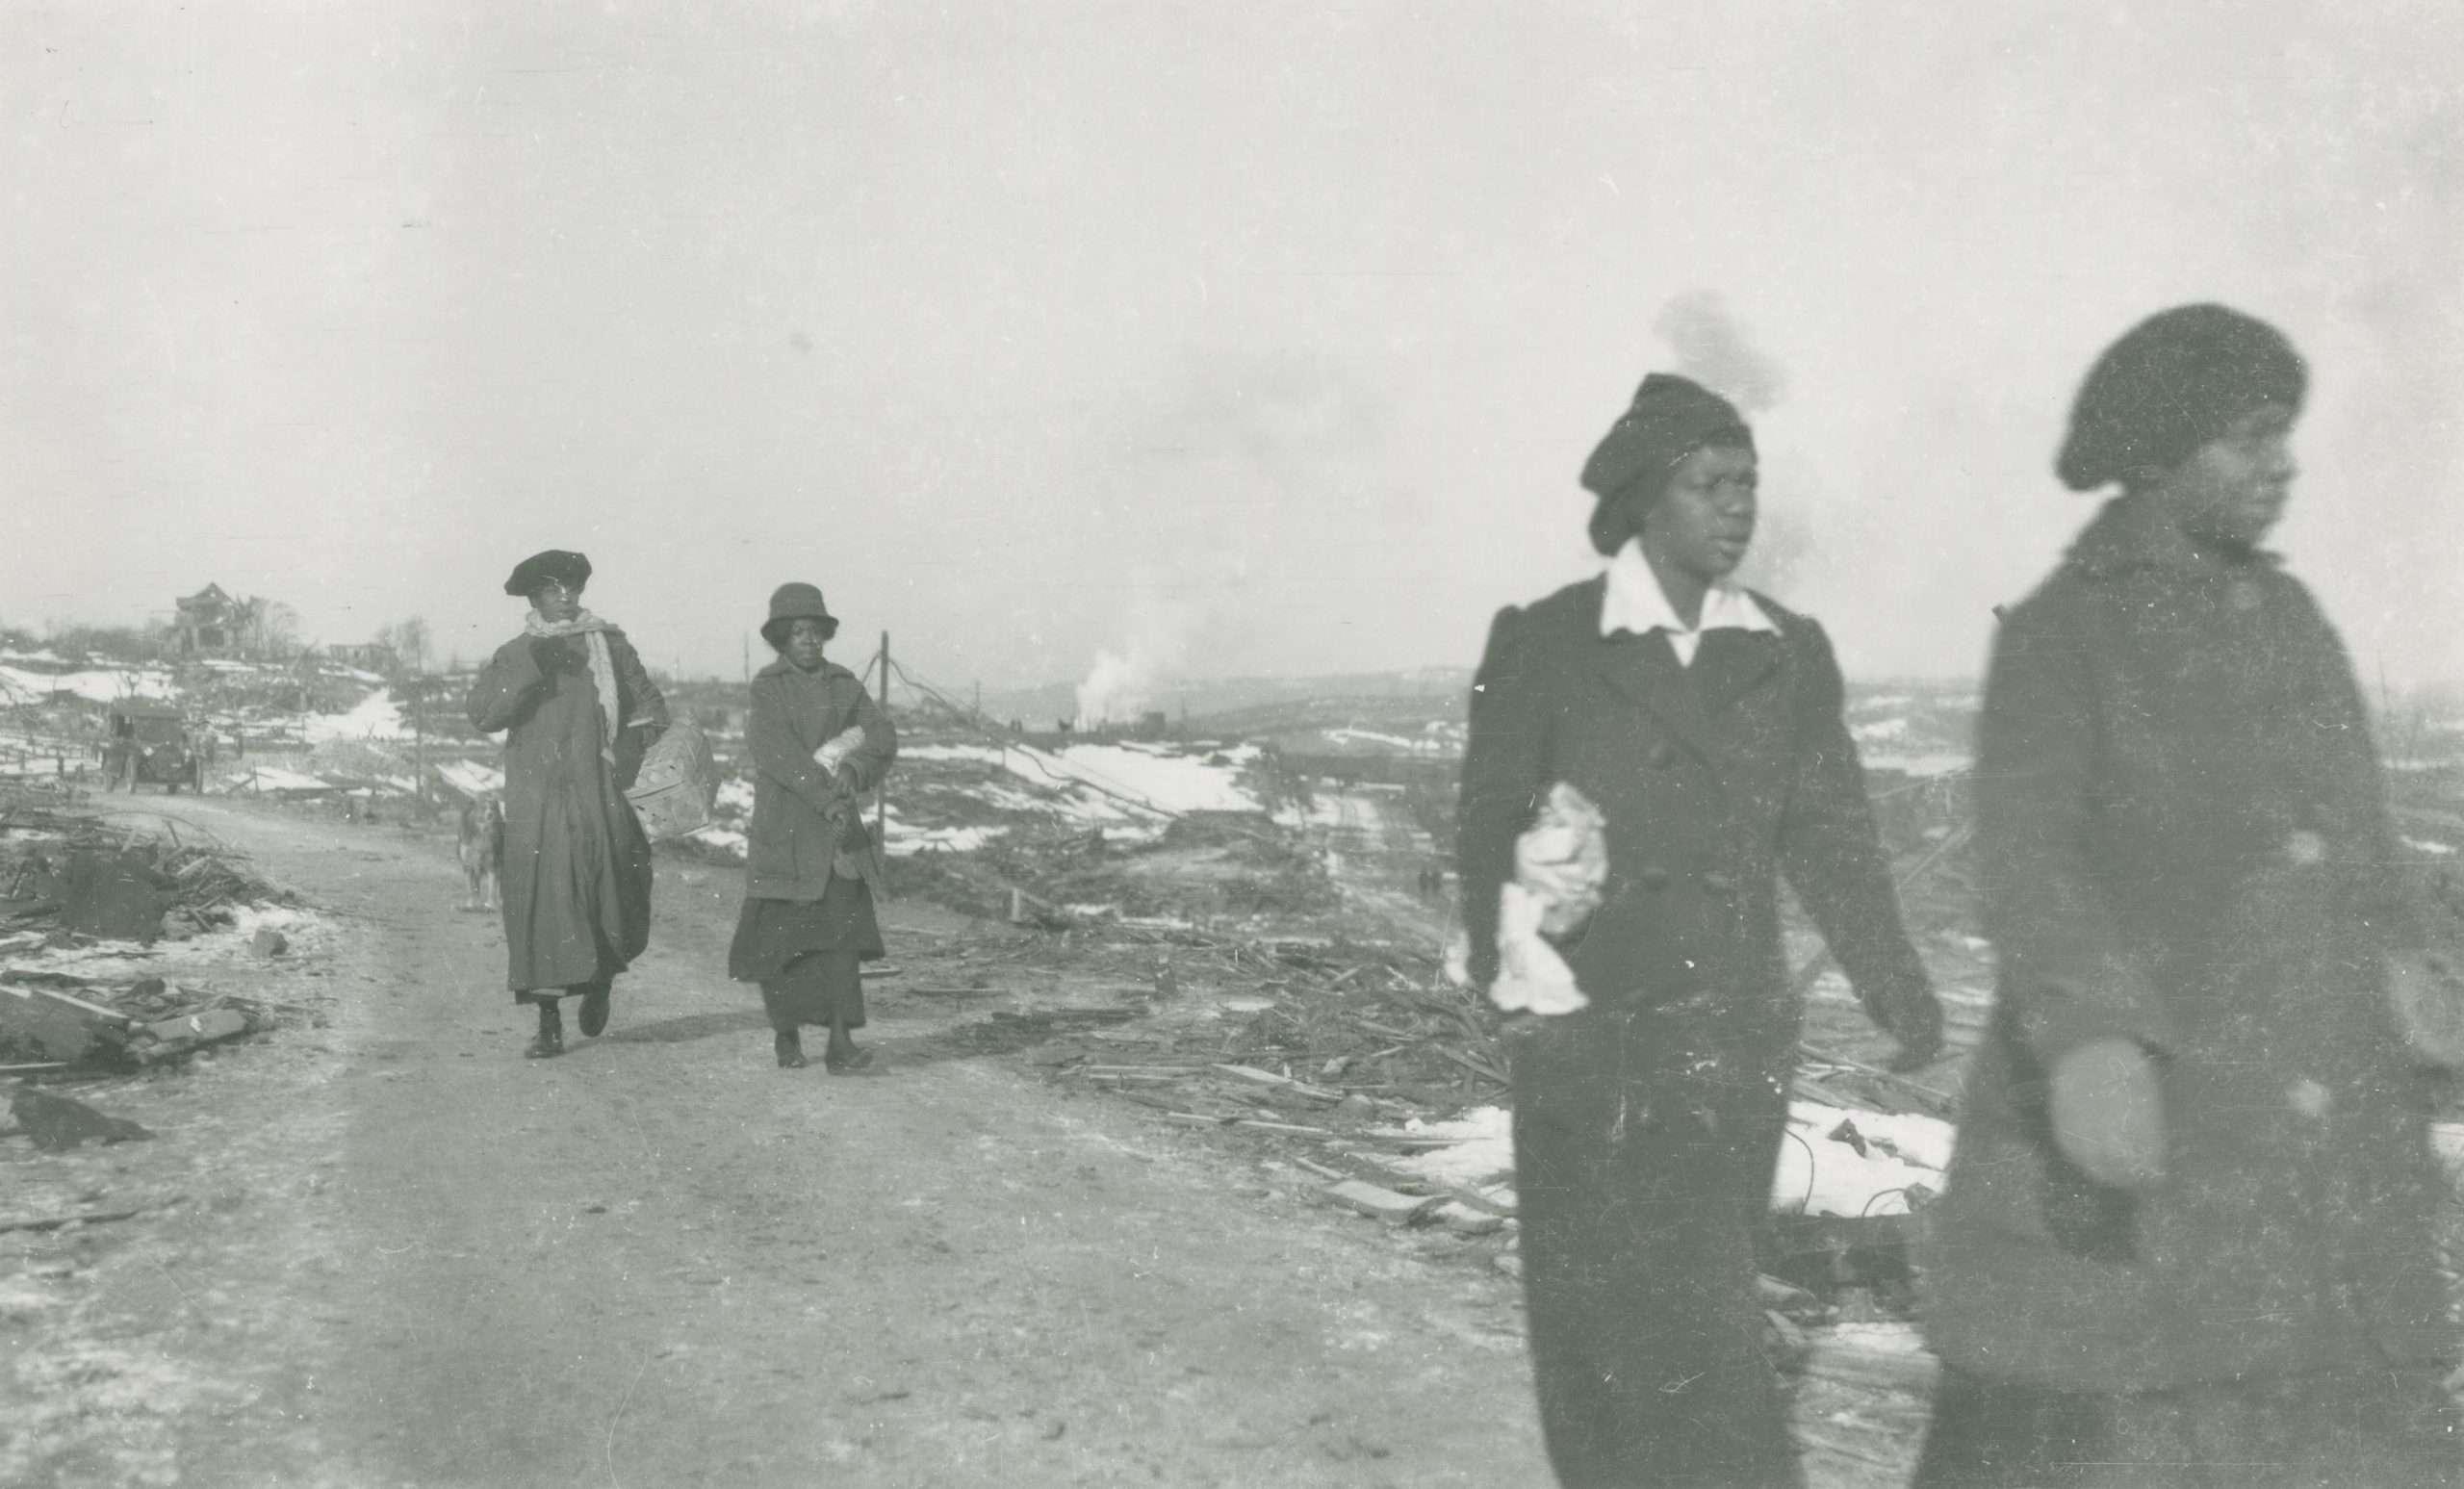 Four Black women in overcoats walk down a dirt road that runs through barren land.